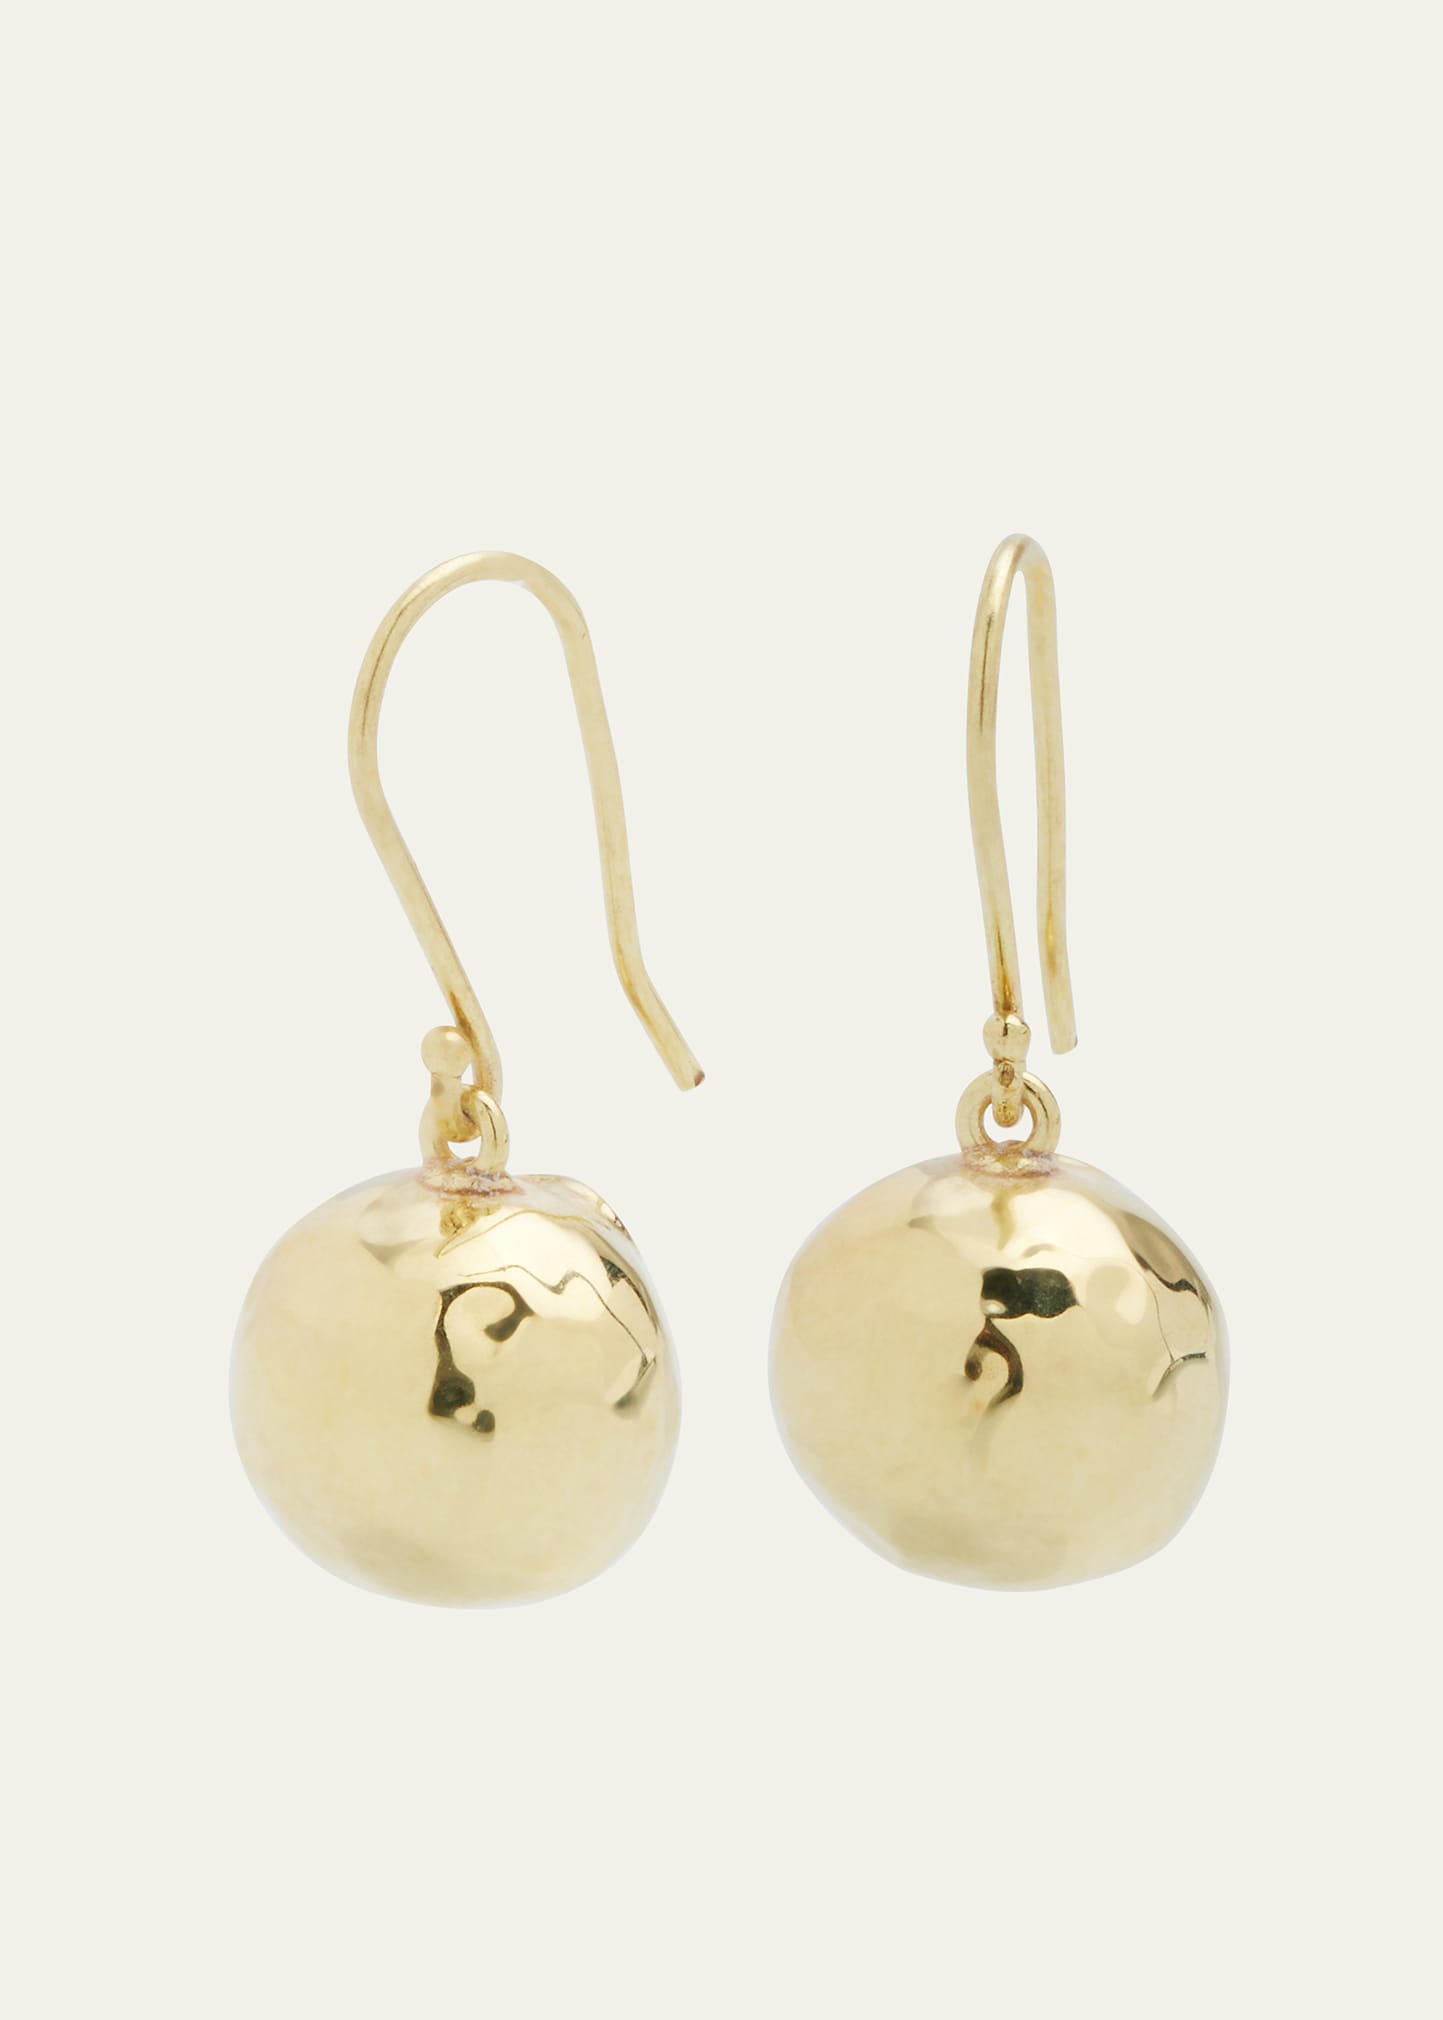 IPPOLITA Lollipop® Small Single Drop Earrings in 18K Gold